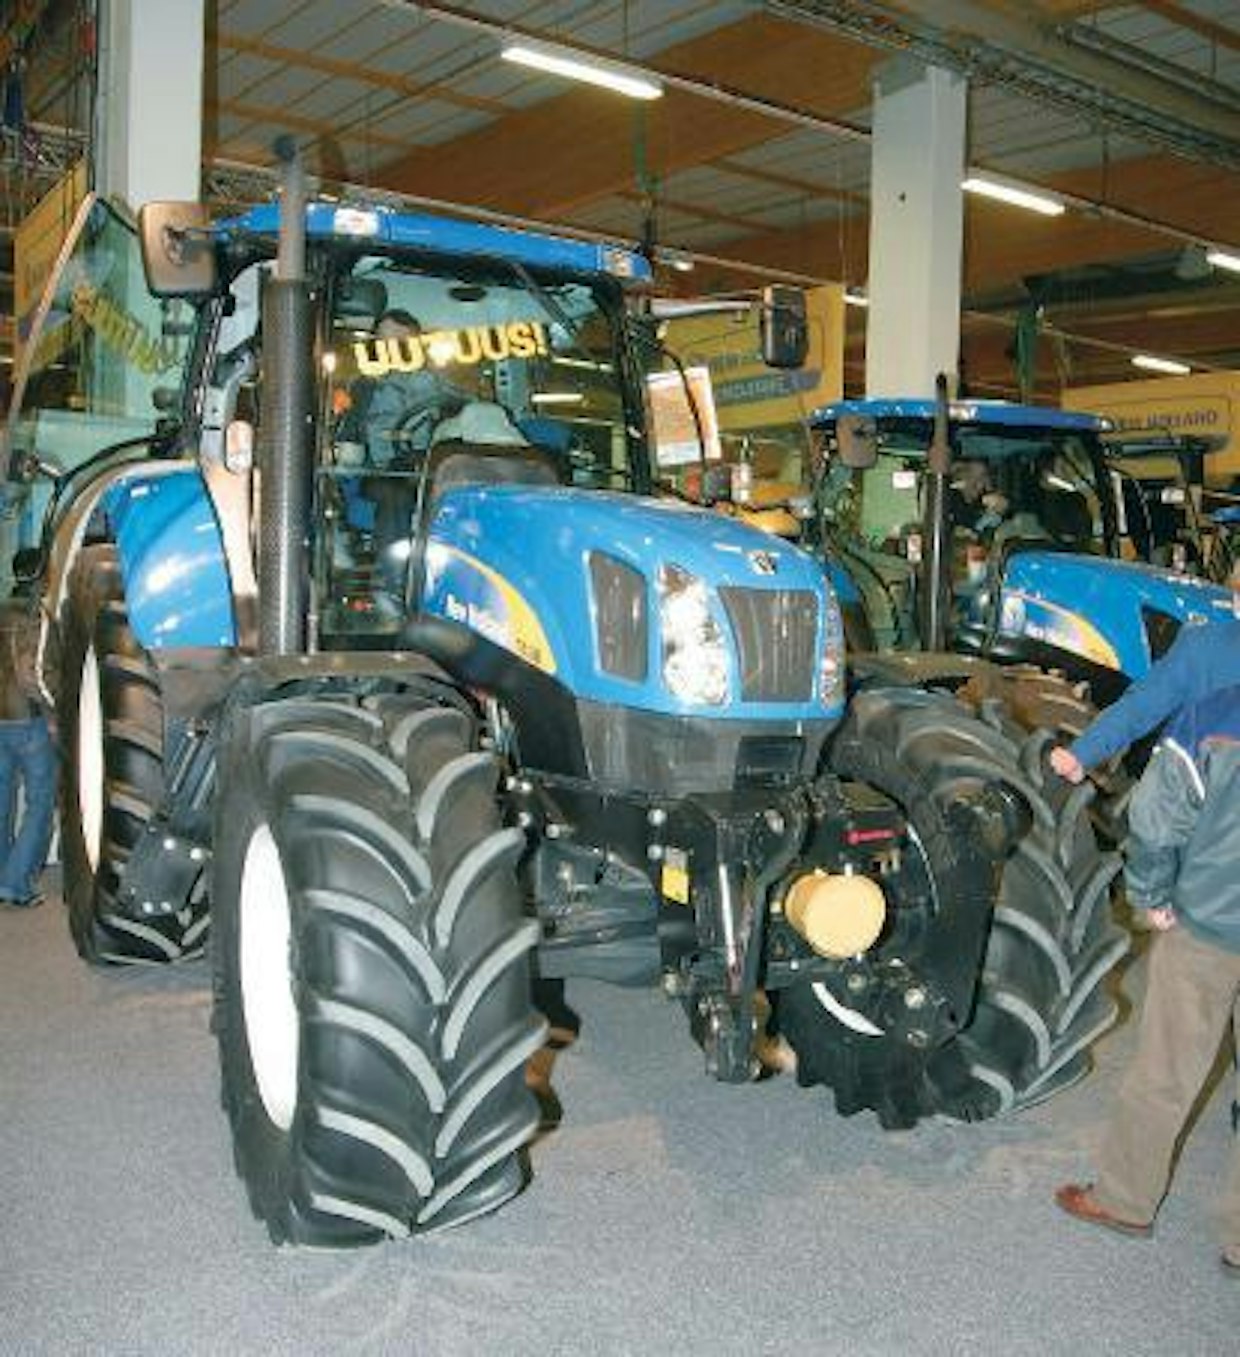 Agritekin uudet traktorit: New Holland 6000 ‑sarjan yläpää ja Case IH Puma ‑sarjan alapää vahvistuvat kumpikin kuusisylinterisillä, 6,7-litraisilla yhteispaineruiskutusmoottoreilla varustetuilla malleilla. NH T6030, T6050, T6070 ja T6080 korvaavat markkinoilta poistumassa olevan TM-sarjan. Mallikohtaiset suurimmat ISO-tehot ovat 128, 138, 152 ja 168 hevosvoimaa. Puma 125:n, 140:n ja 150:n tehot ovat samat kuin kolmessa suurimmassa NH:ssa. Sinisten ajovoimansiirroksi voi valita joko osa- tai täyspowershiftin ja punaisissa ainoa vaihtoehto on täyspower-shift. Vaihteistot saa joko neljänkympin, neljänkympin eko tai viidenkympin versioina. HH ã